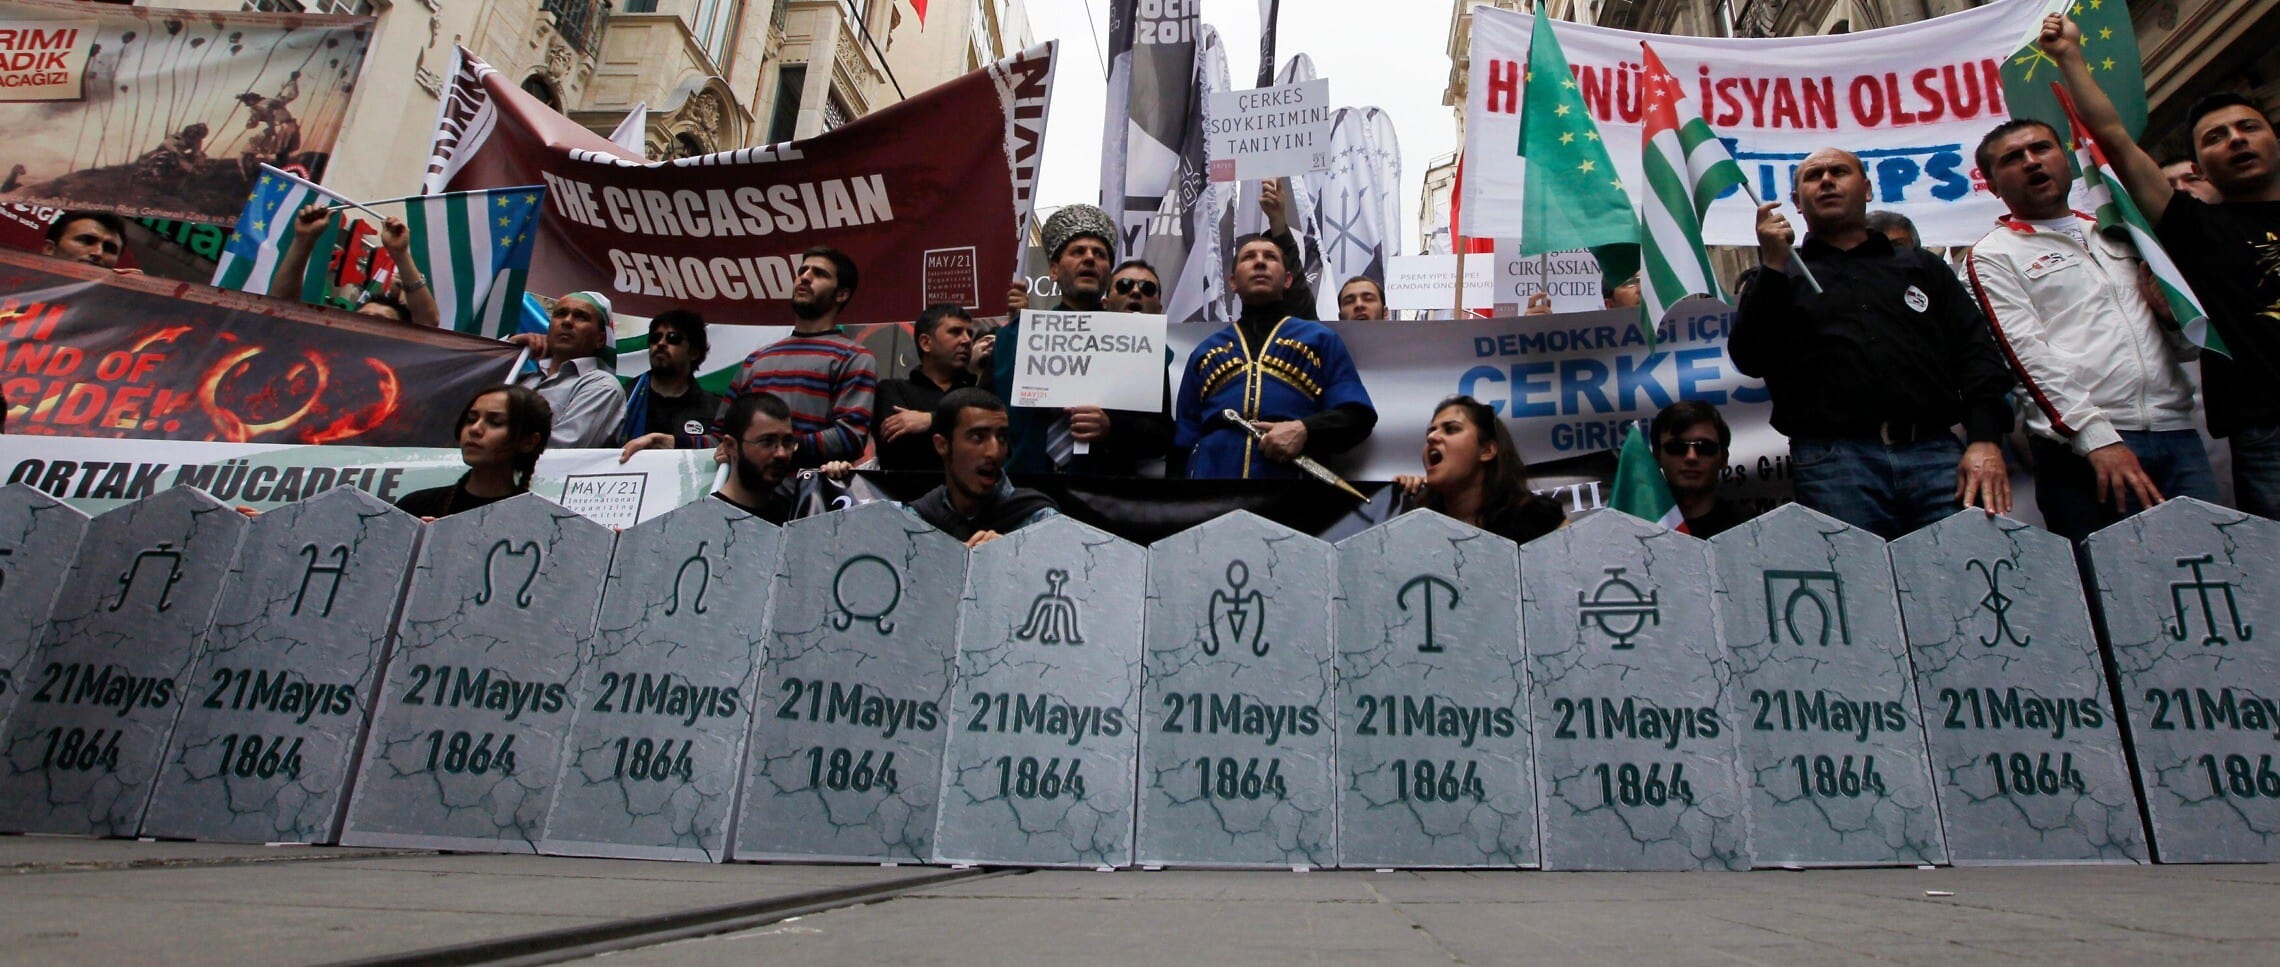 צ'רקסים מפגינים ליד הקונסוליה הרוסית באיסטנבול להכרה ברצח העם הצ'רקסי במאה ה-19 (צילום: Murad Sezer/Reuters via Alamy)